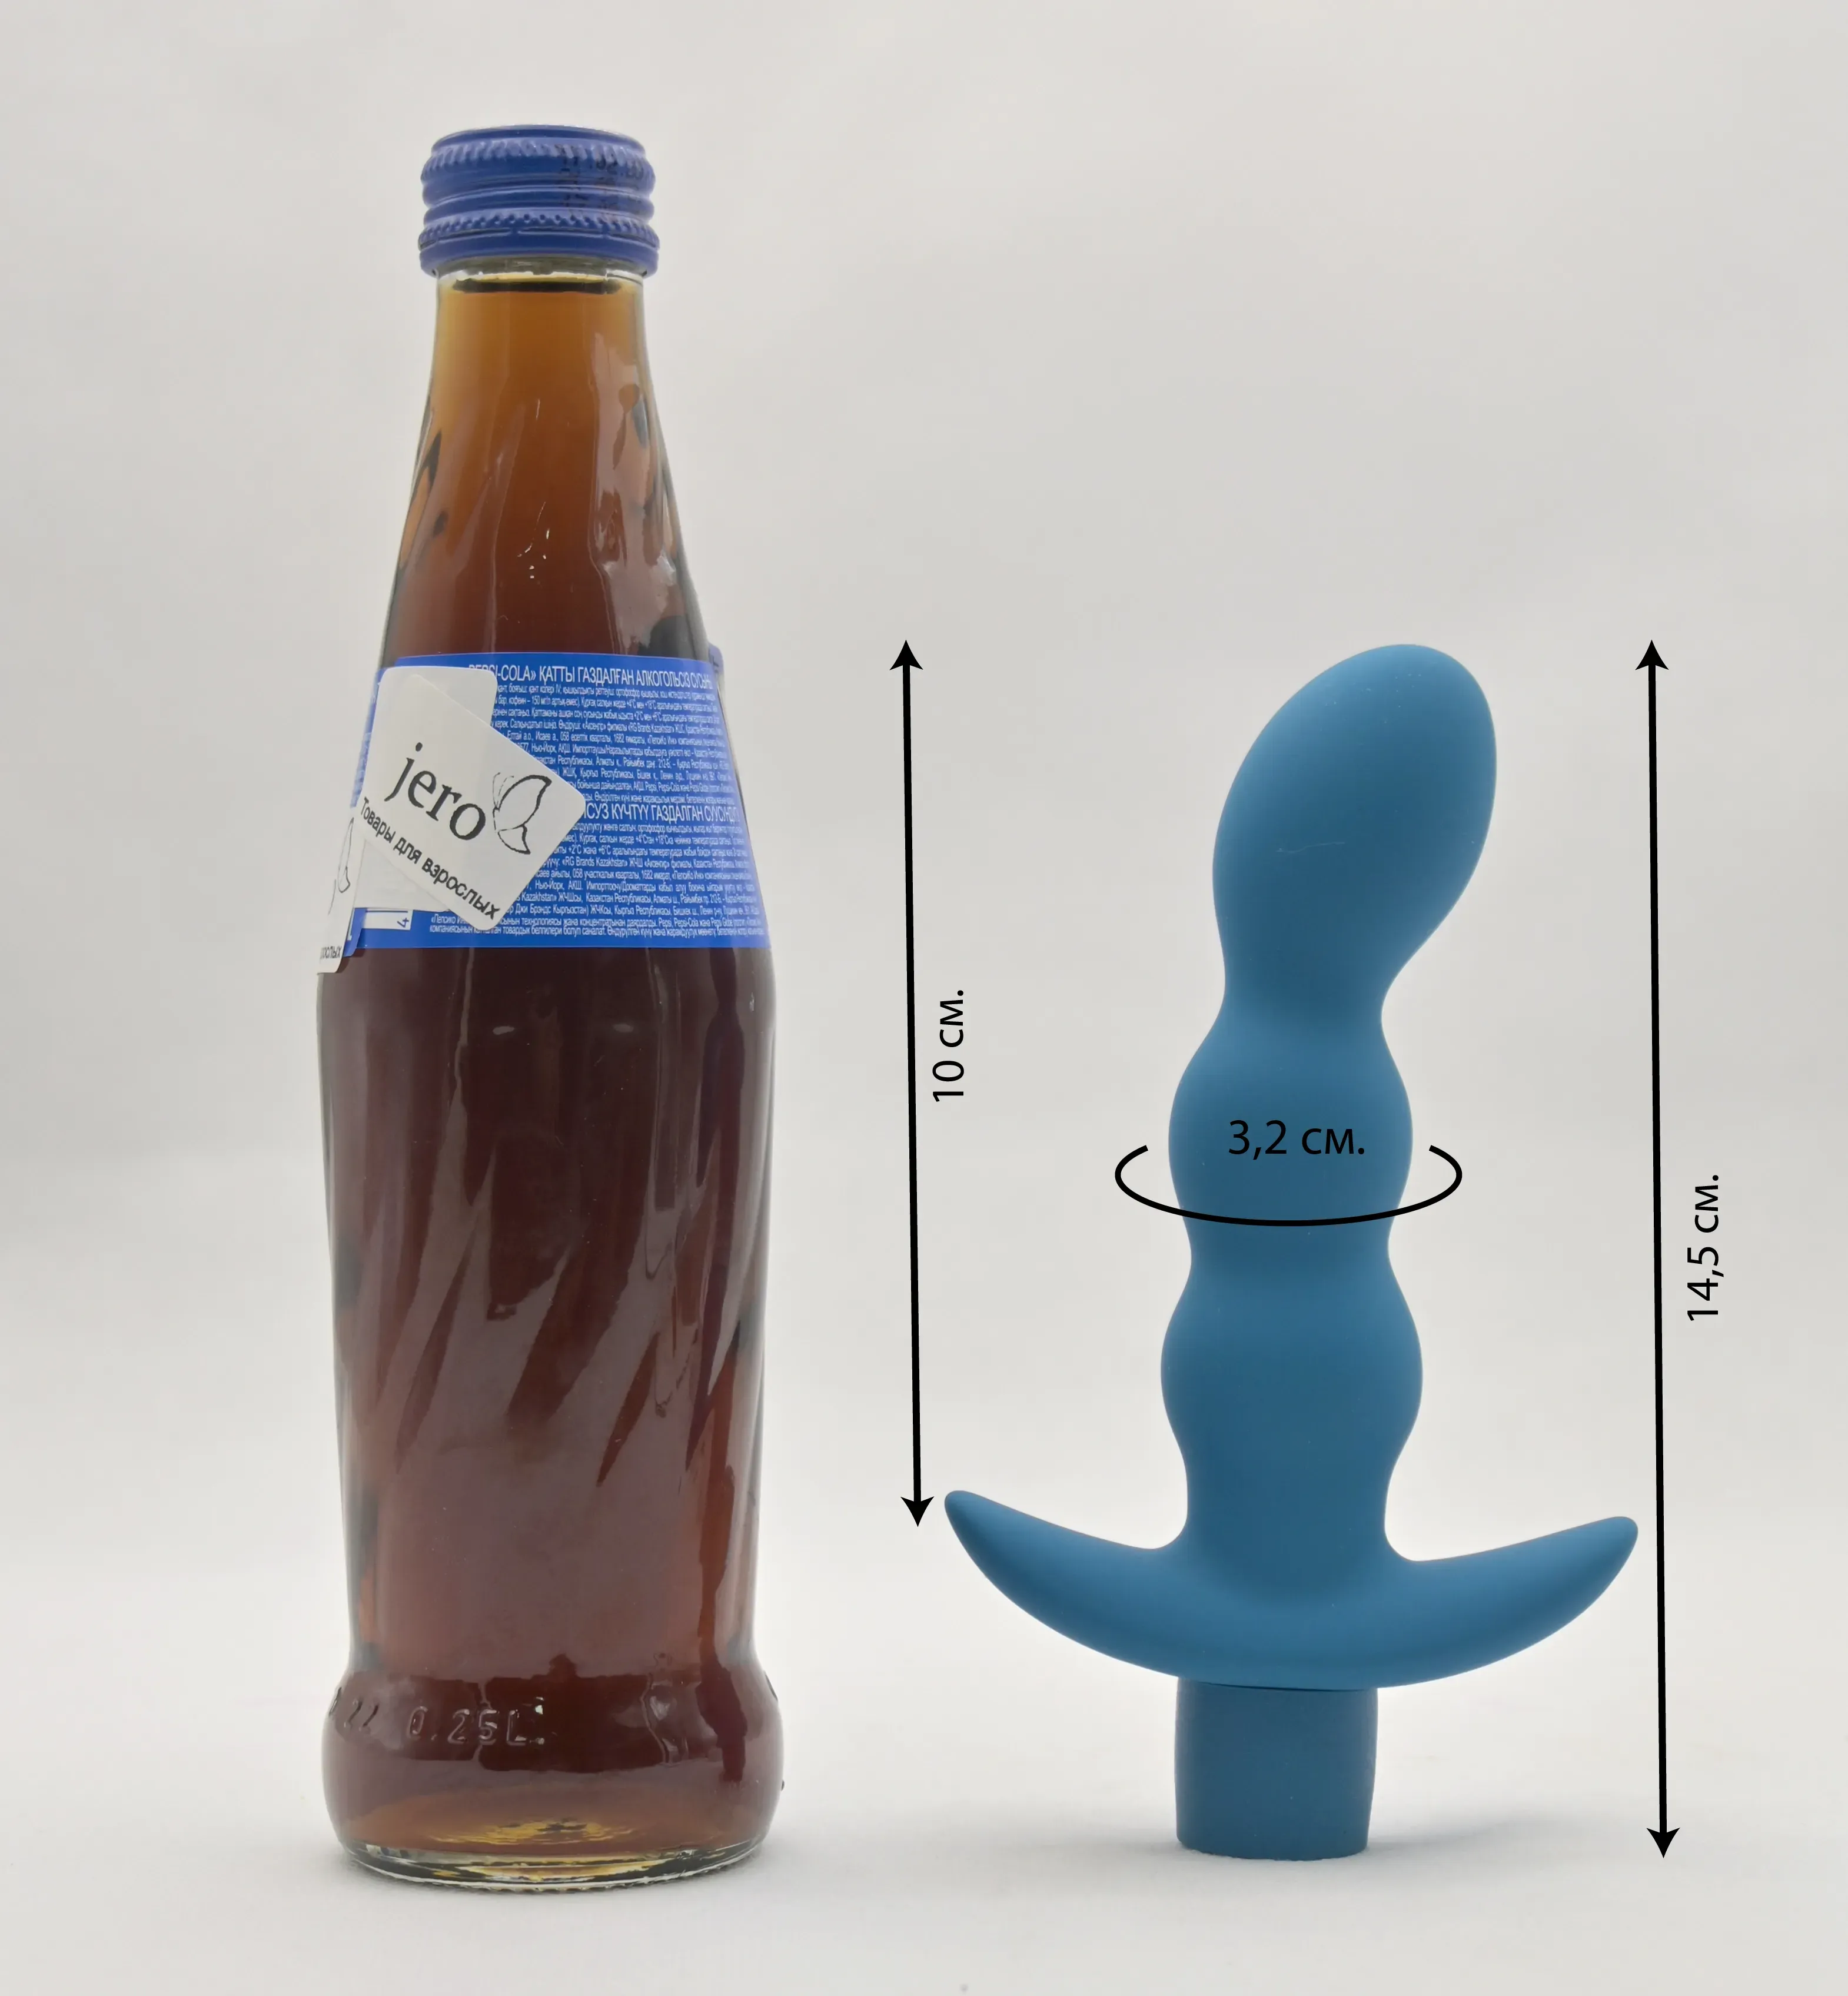 Размеры втулки и сравнение с бутылкой пепси